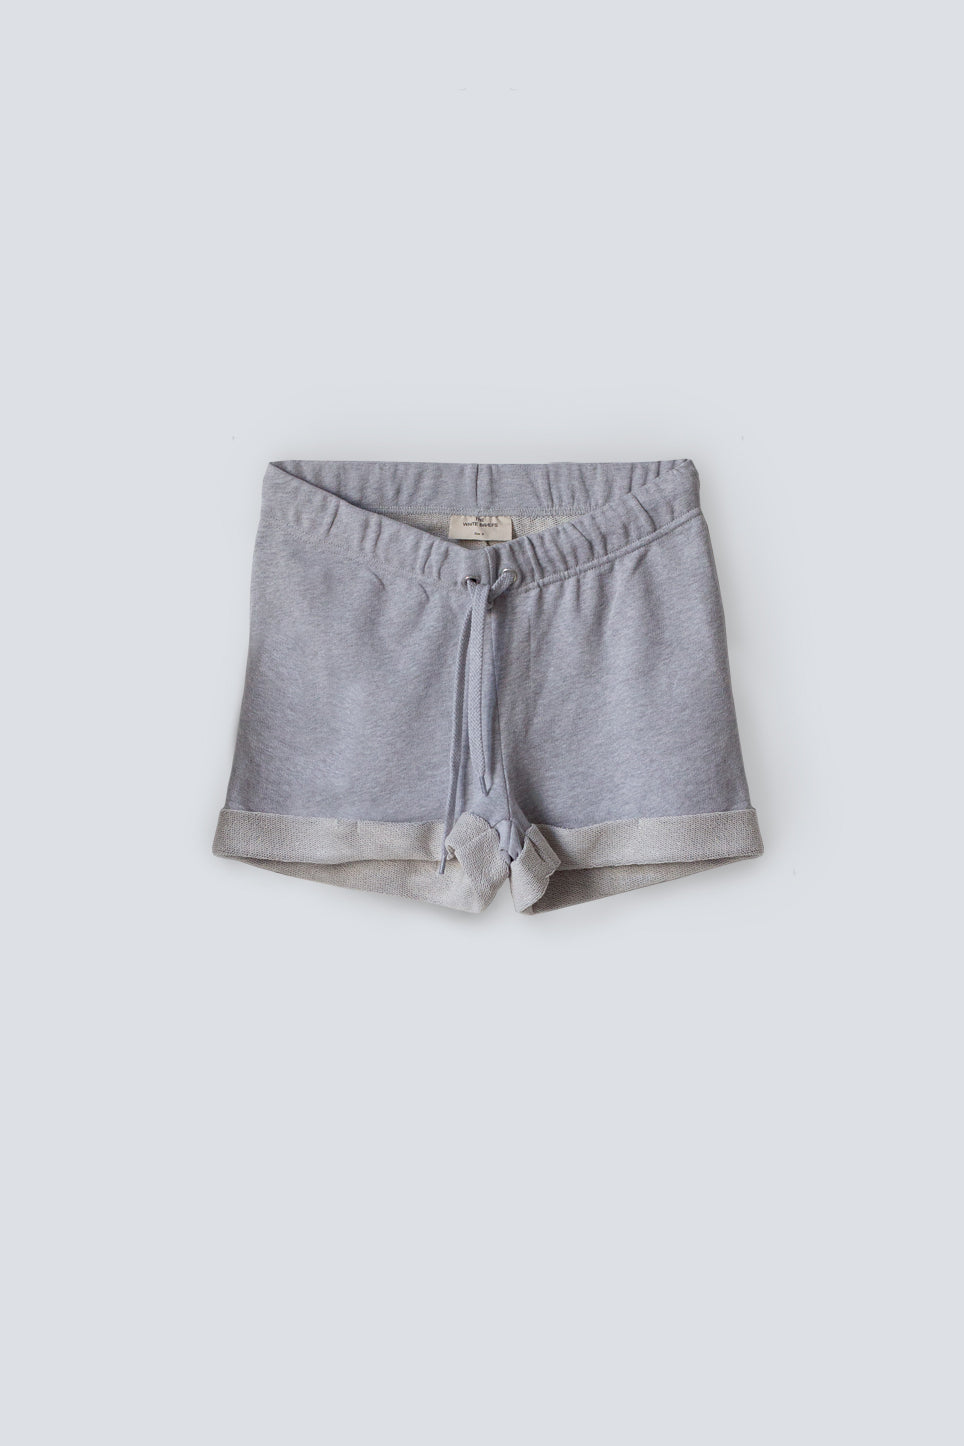 gray sweat shorts womens